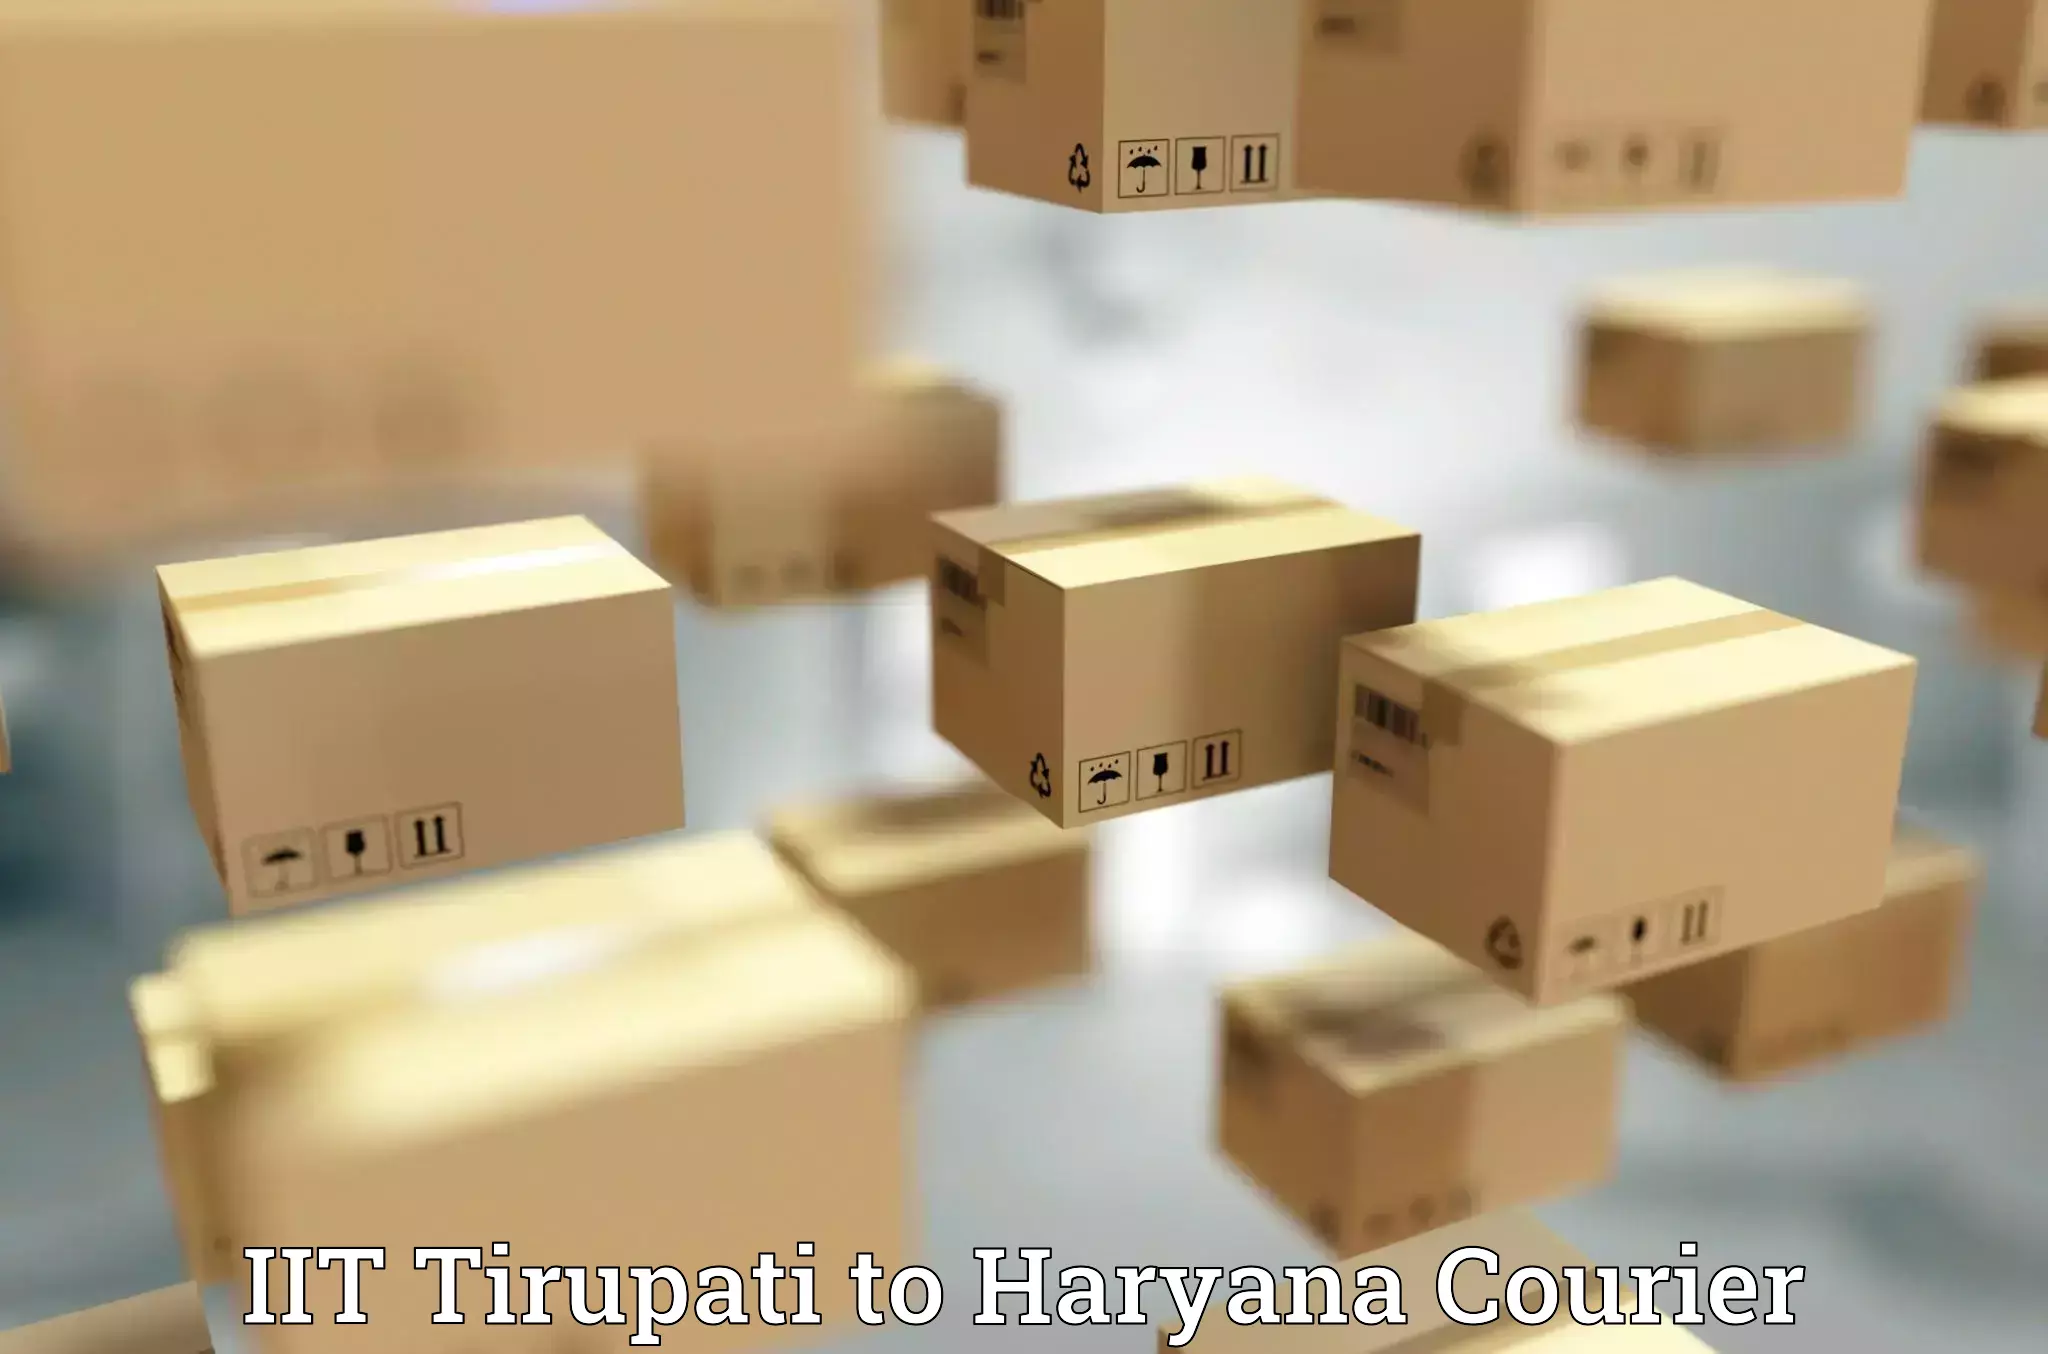 Weekend courier service IIT Tirupati to Ambala